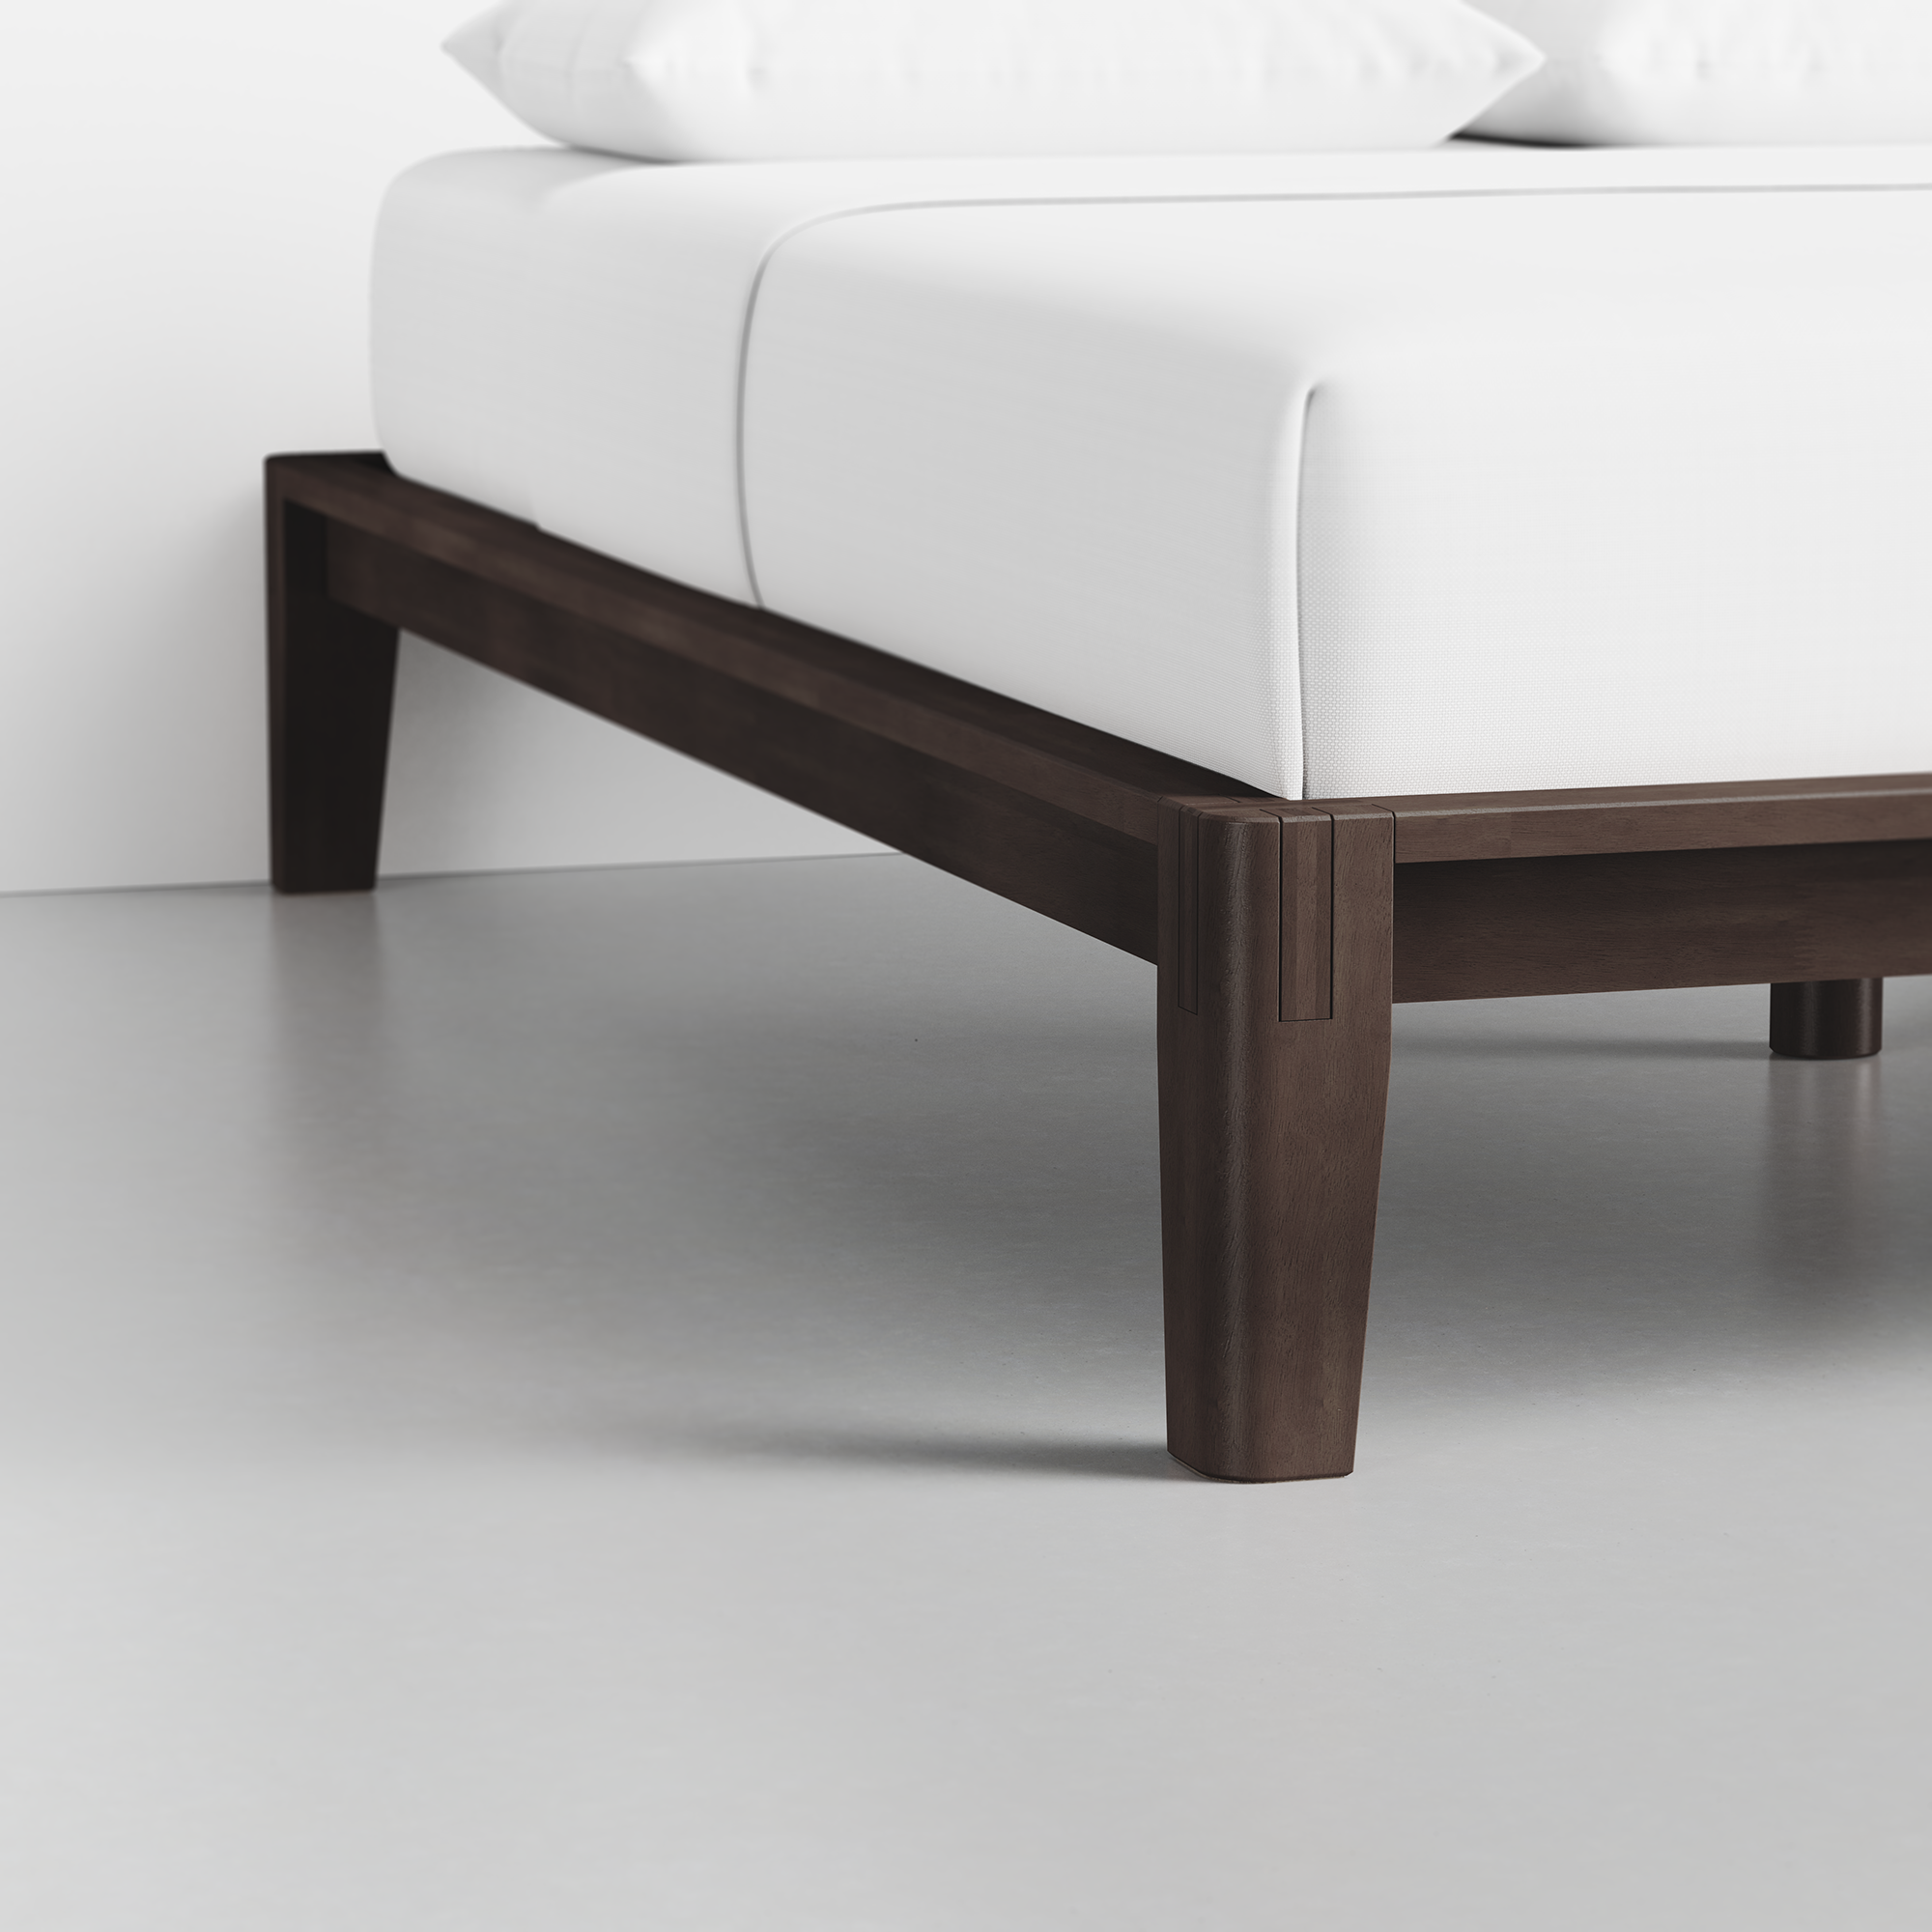 The Bed (Espresso / Frame) - Render - Foot Detail